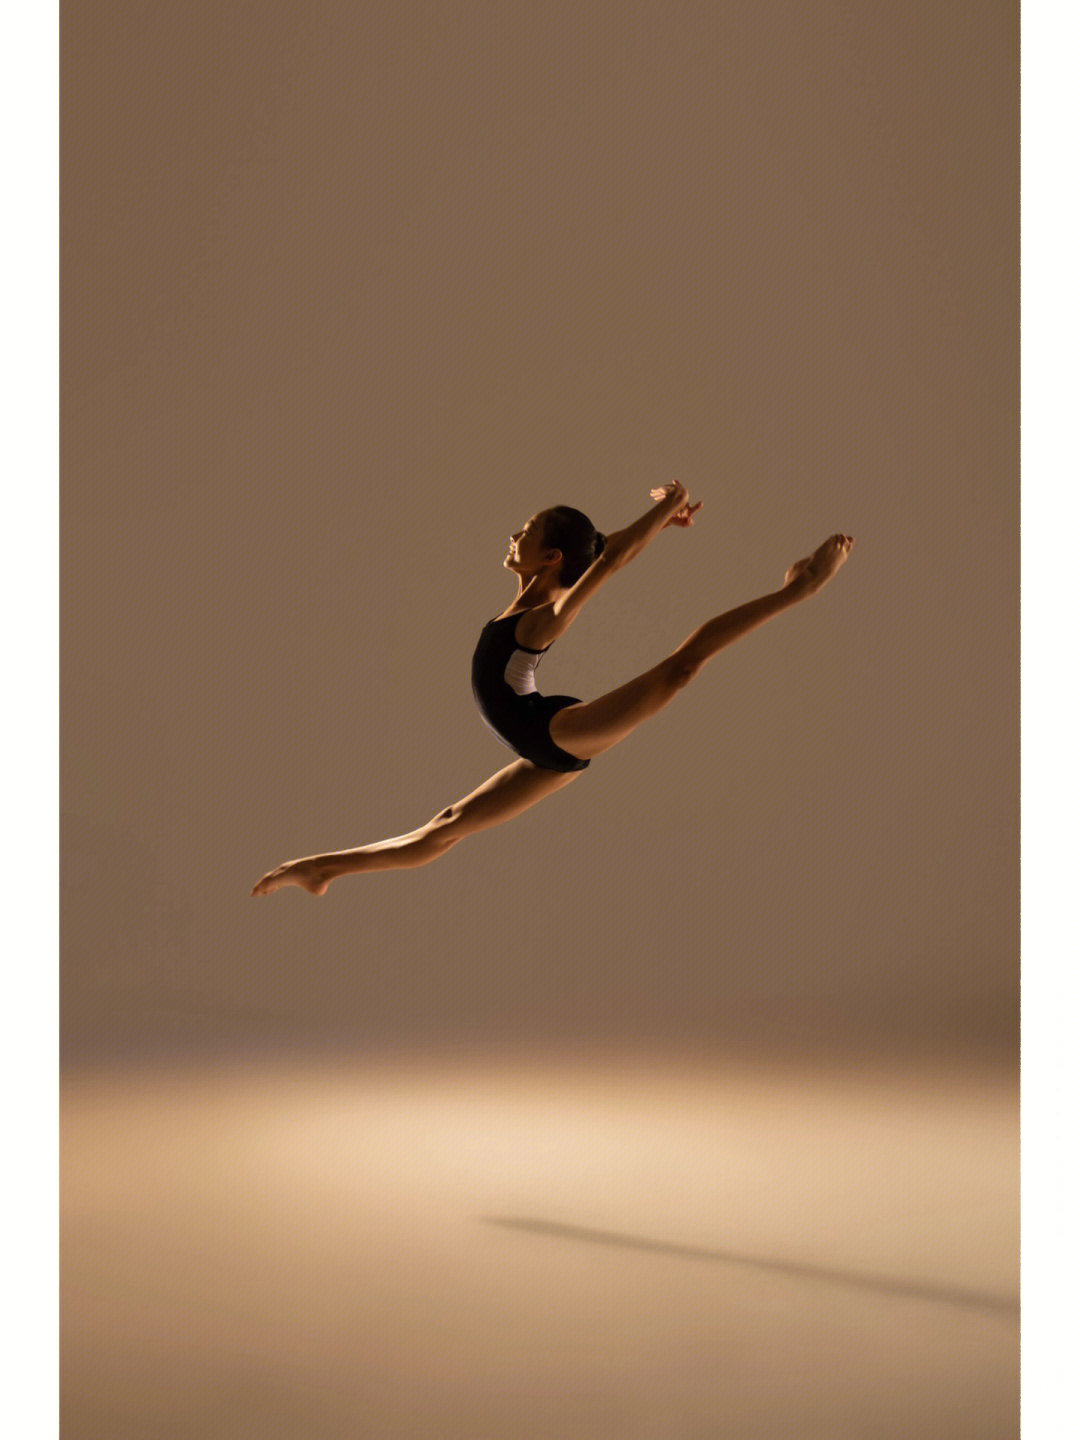 芭蕾舞手机壁纸图片